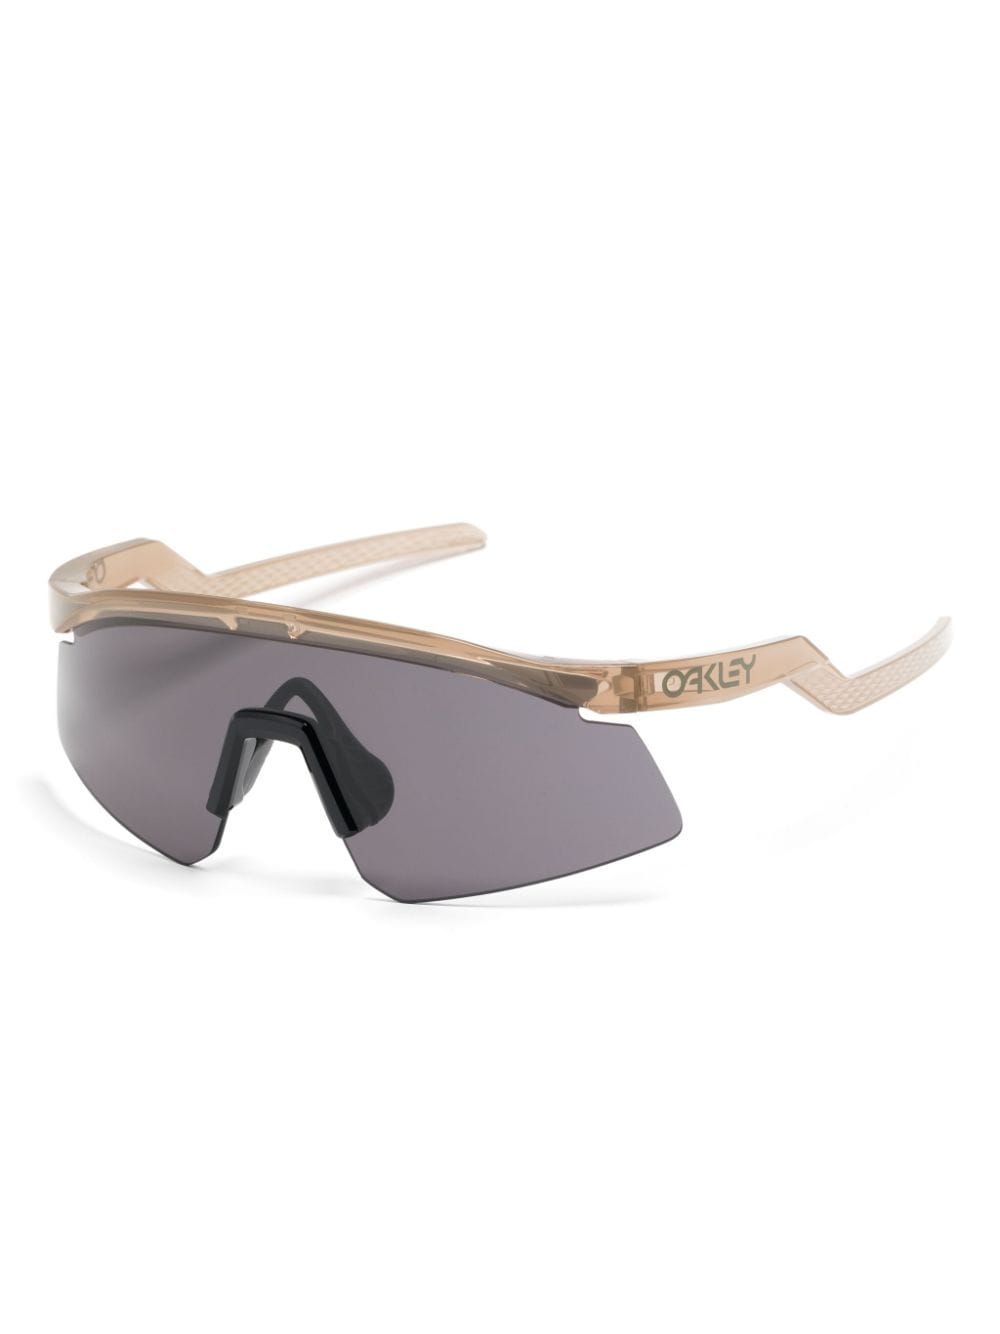 Oakley Hydra shield-frame sunglasses - Beige